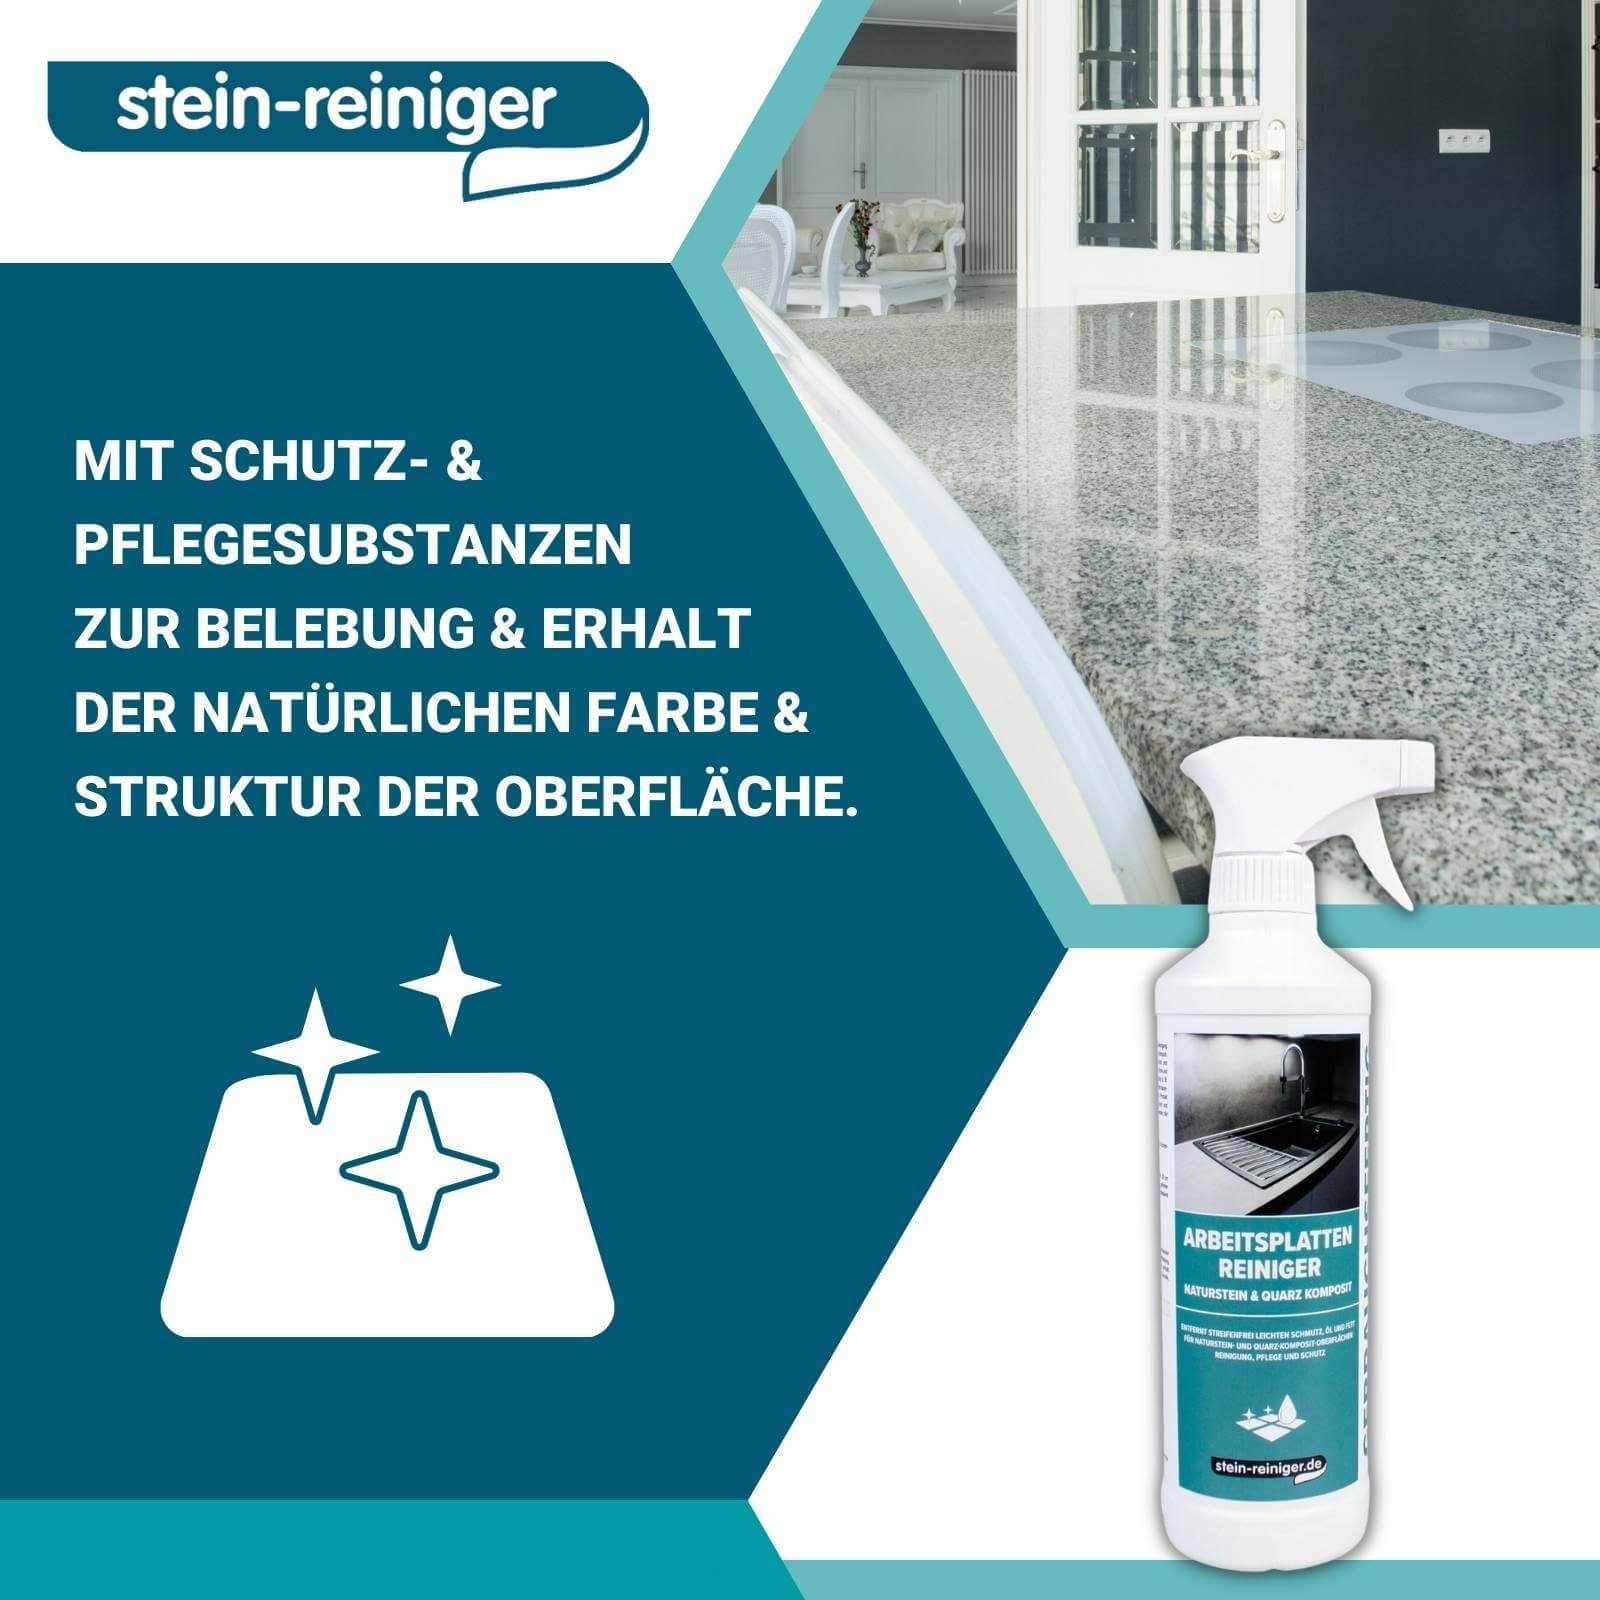 stein-reiniger.de Arbeitsplatten Reiniger Küchenreiniger Naturstein Quarz & 3-teilig Komposit Set